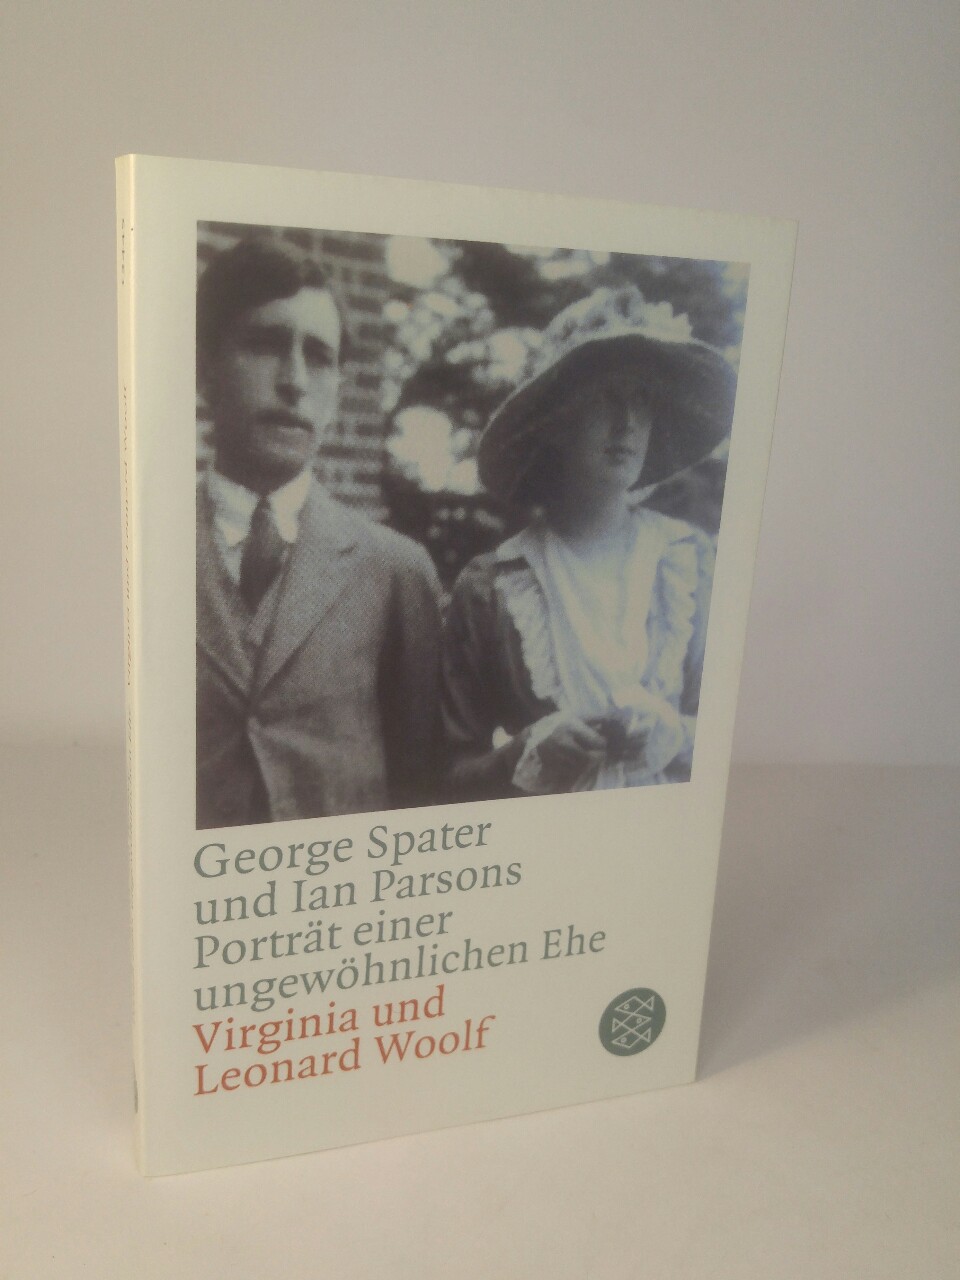 Porträt einer ungewöhnlichen Ehe Virginia & Leonard Woolf - Parsons, Ian und George Spater